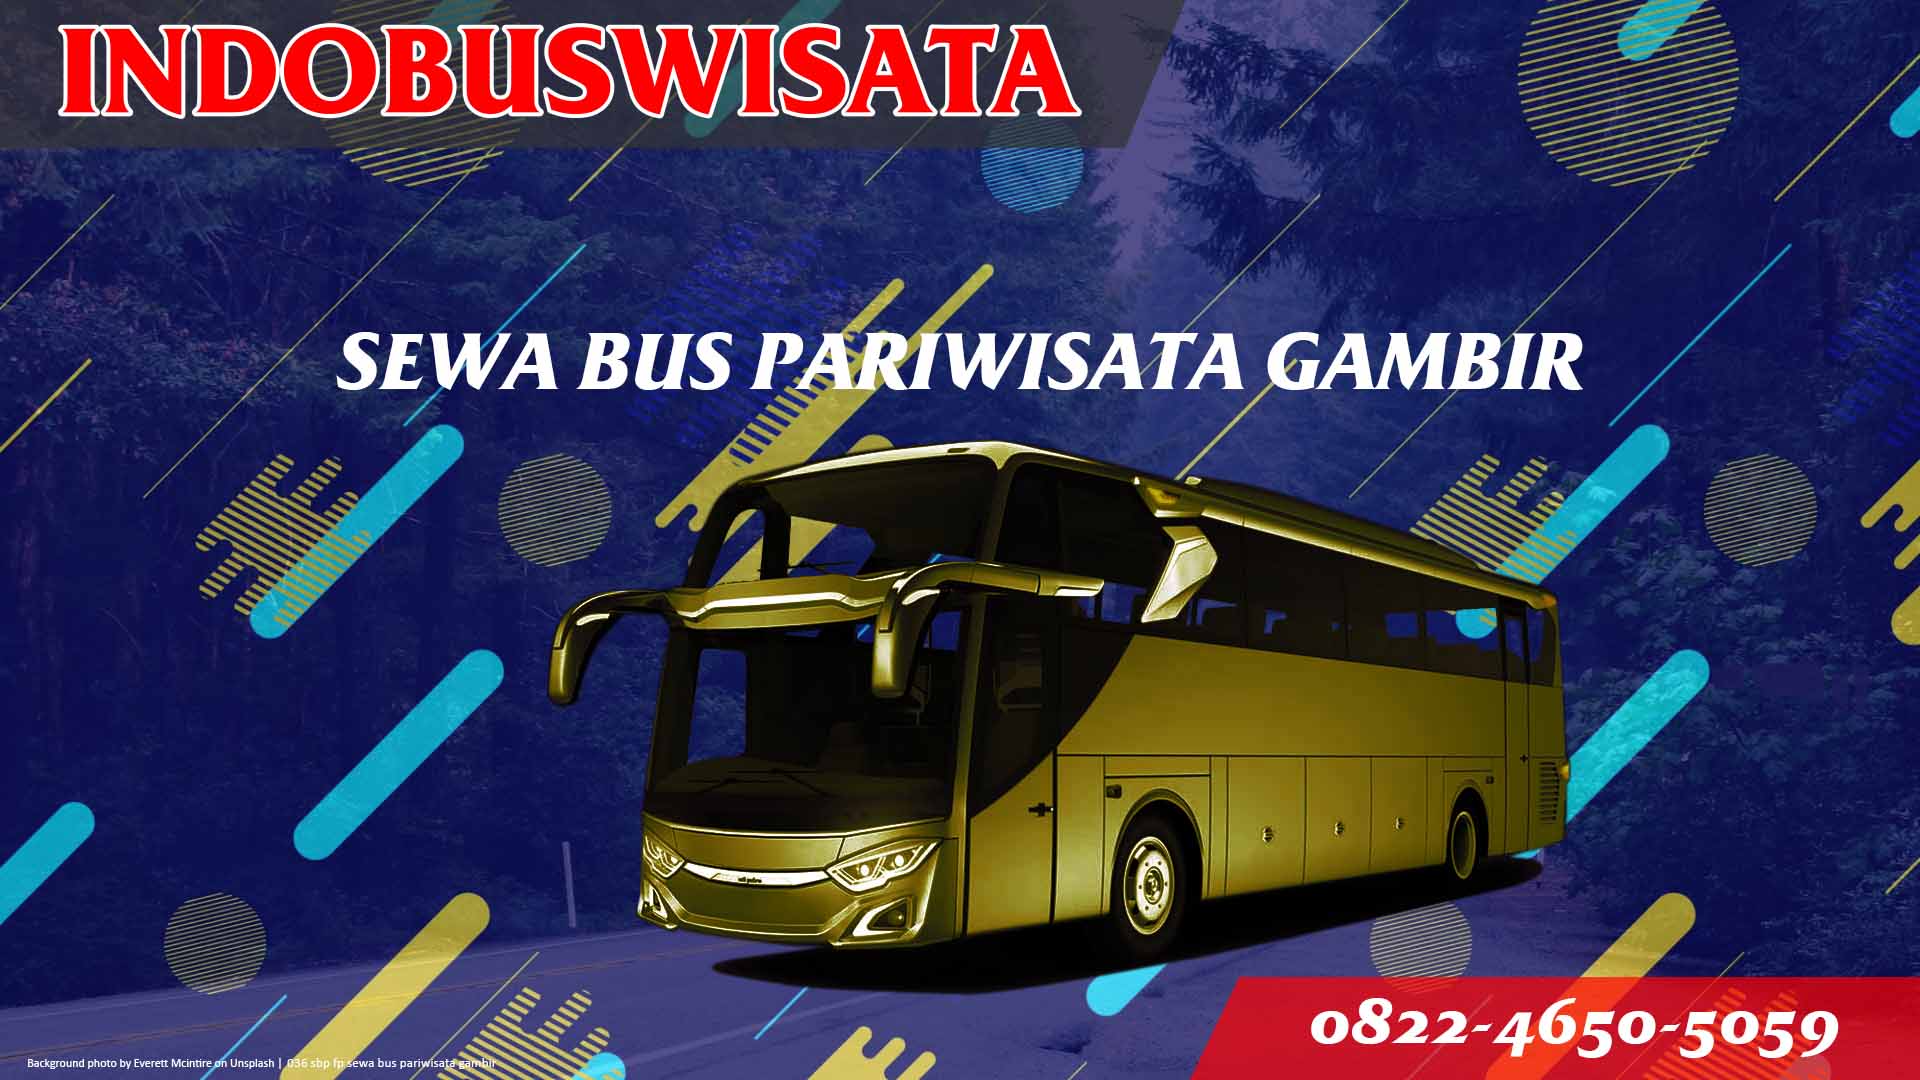 036 Sbp Fp Sewa Bus Pariwisata Gambir Indobuswisata